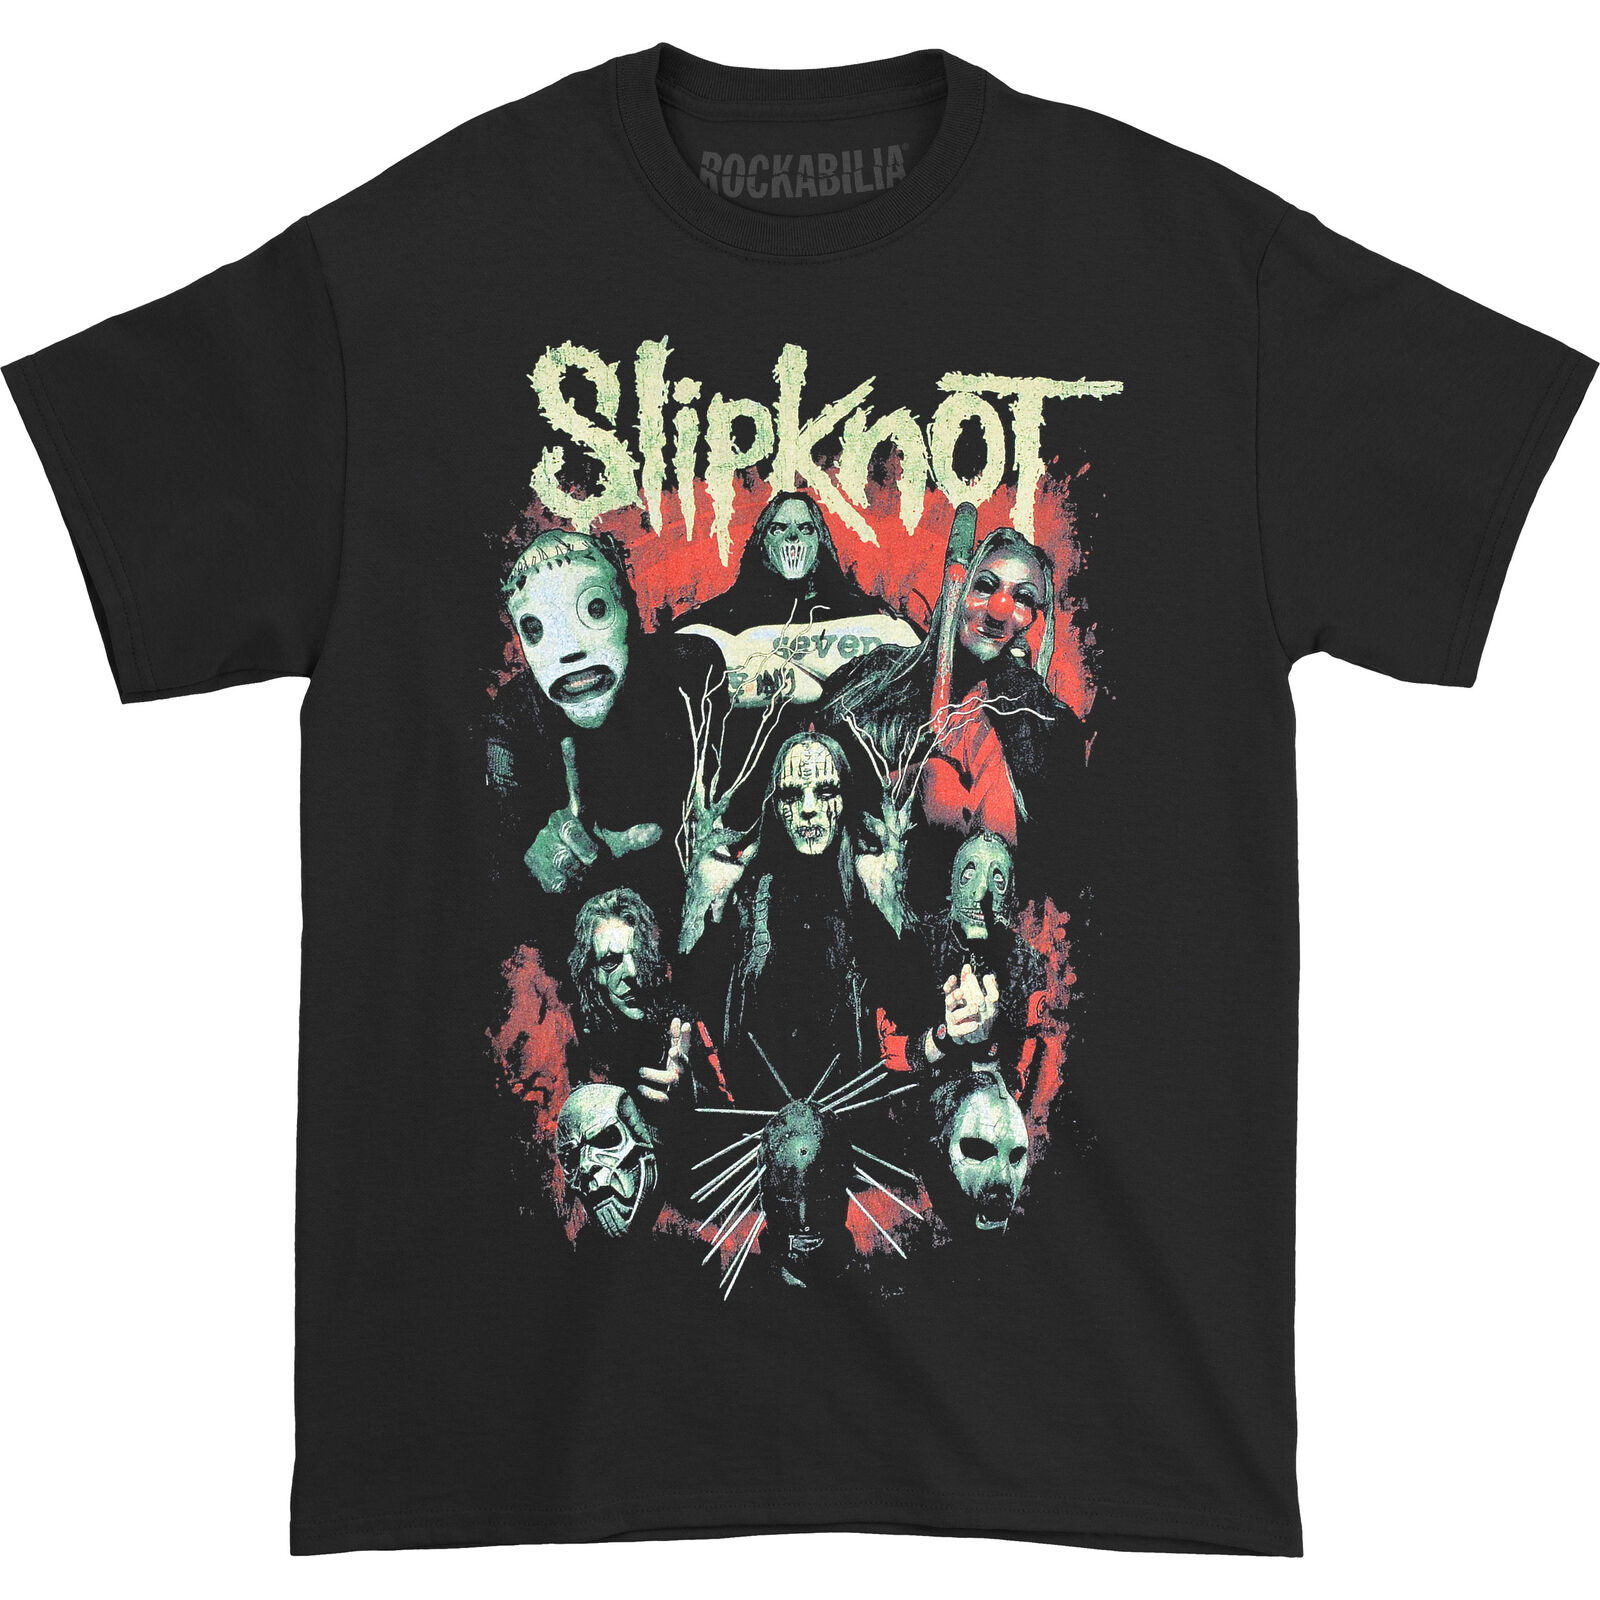 (スリップノット) Slipknot オフィシャル商品 ユニセックス Come Play Dying Tシャツ バックプリント 半袖 トップス 【海外通販】